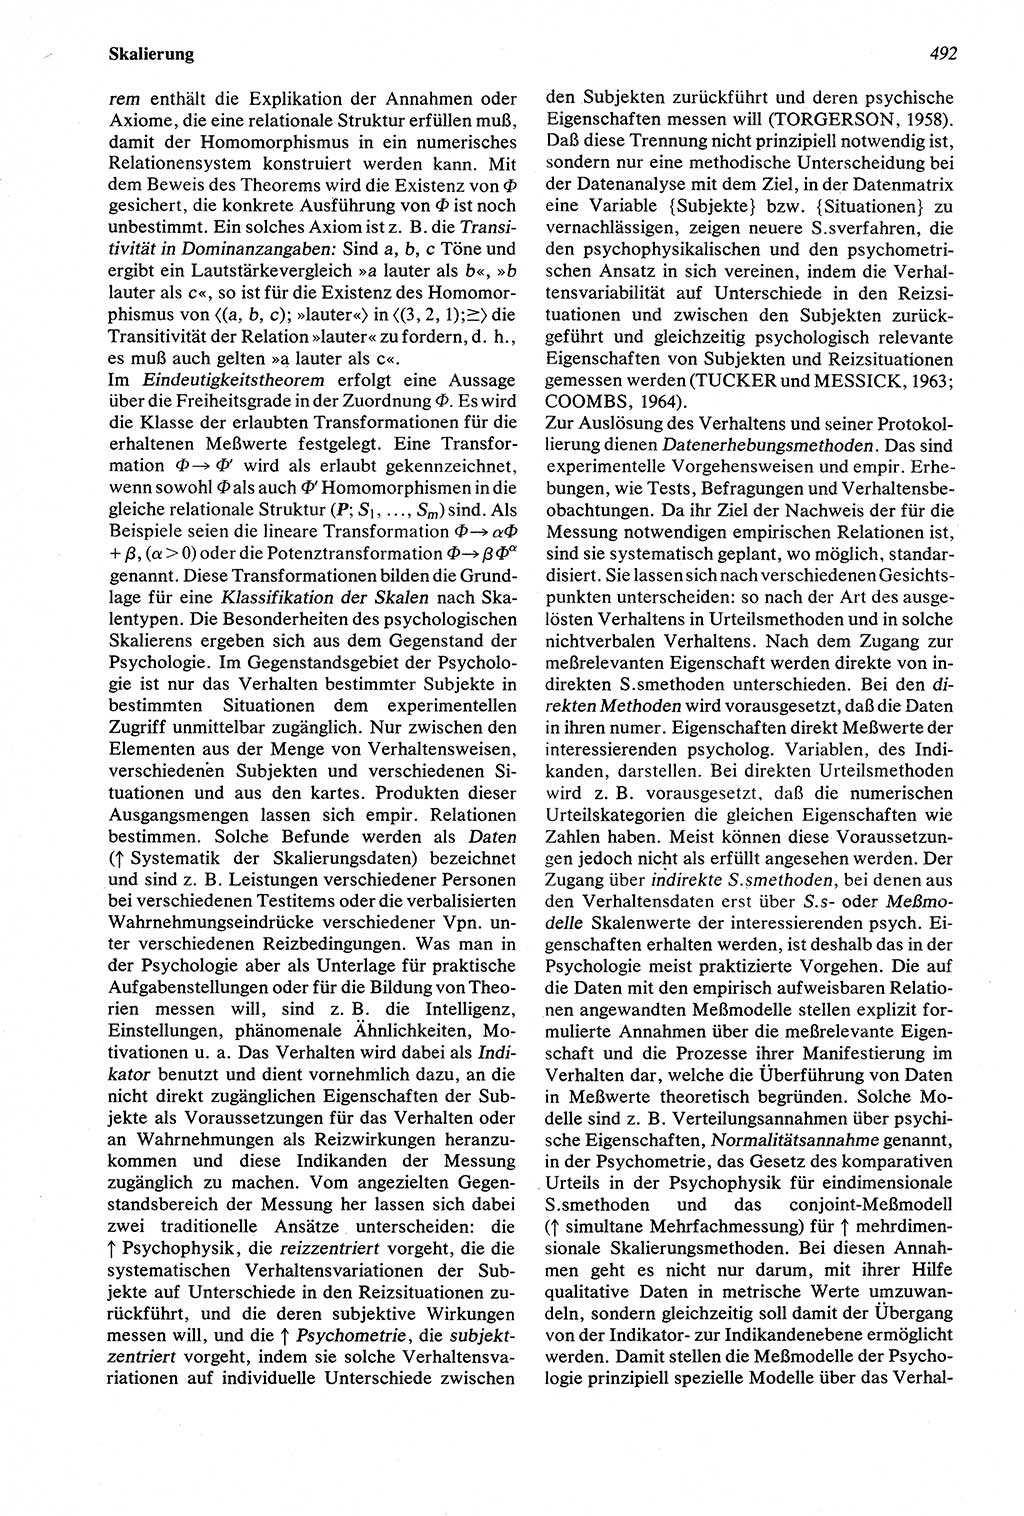 Wörterbuch der Psychologie [Deutsche Demokratische Republik (DDR)] 1976, Seite 492 (Wb. Psych. DDR 1976, S. 492)